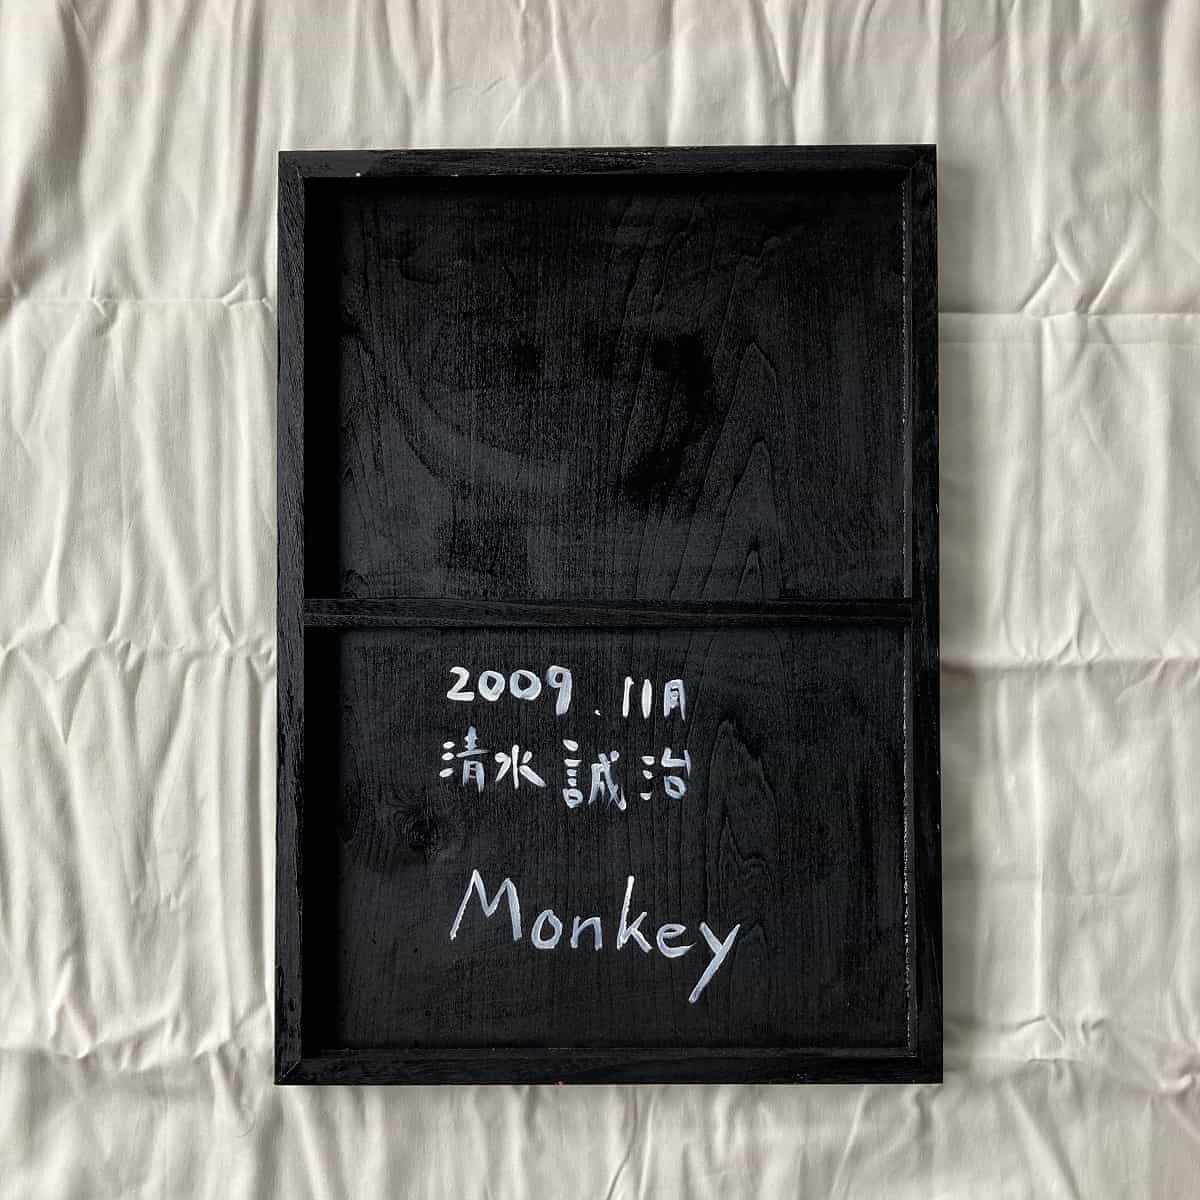 Monkey-2